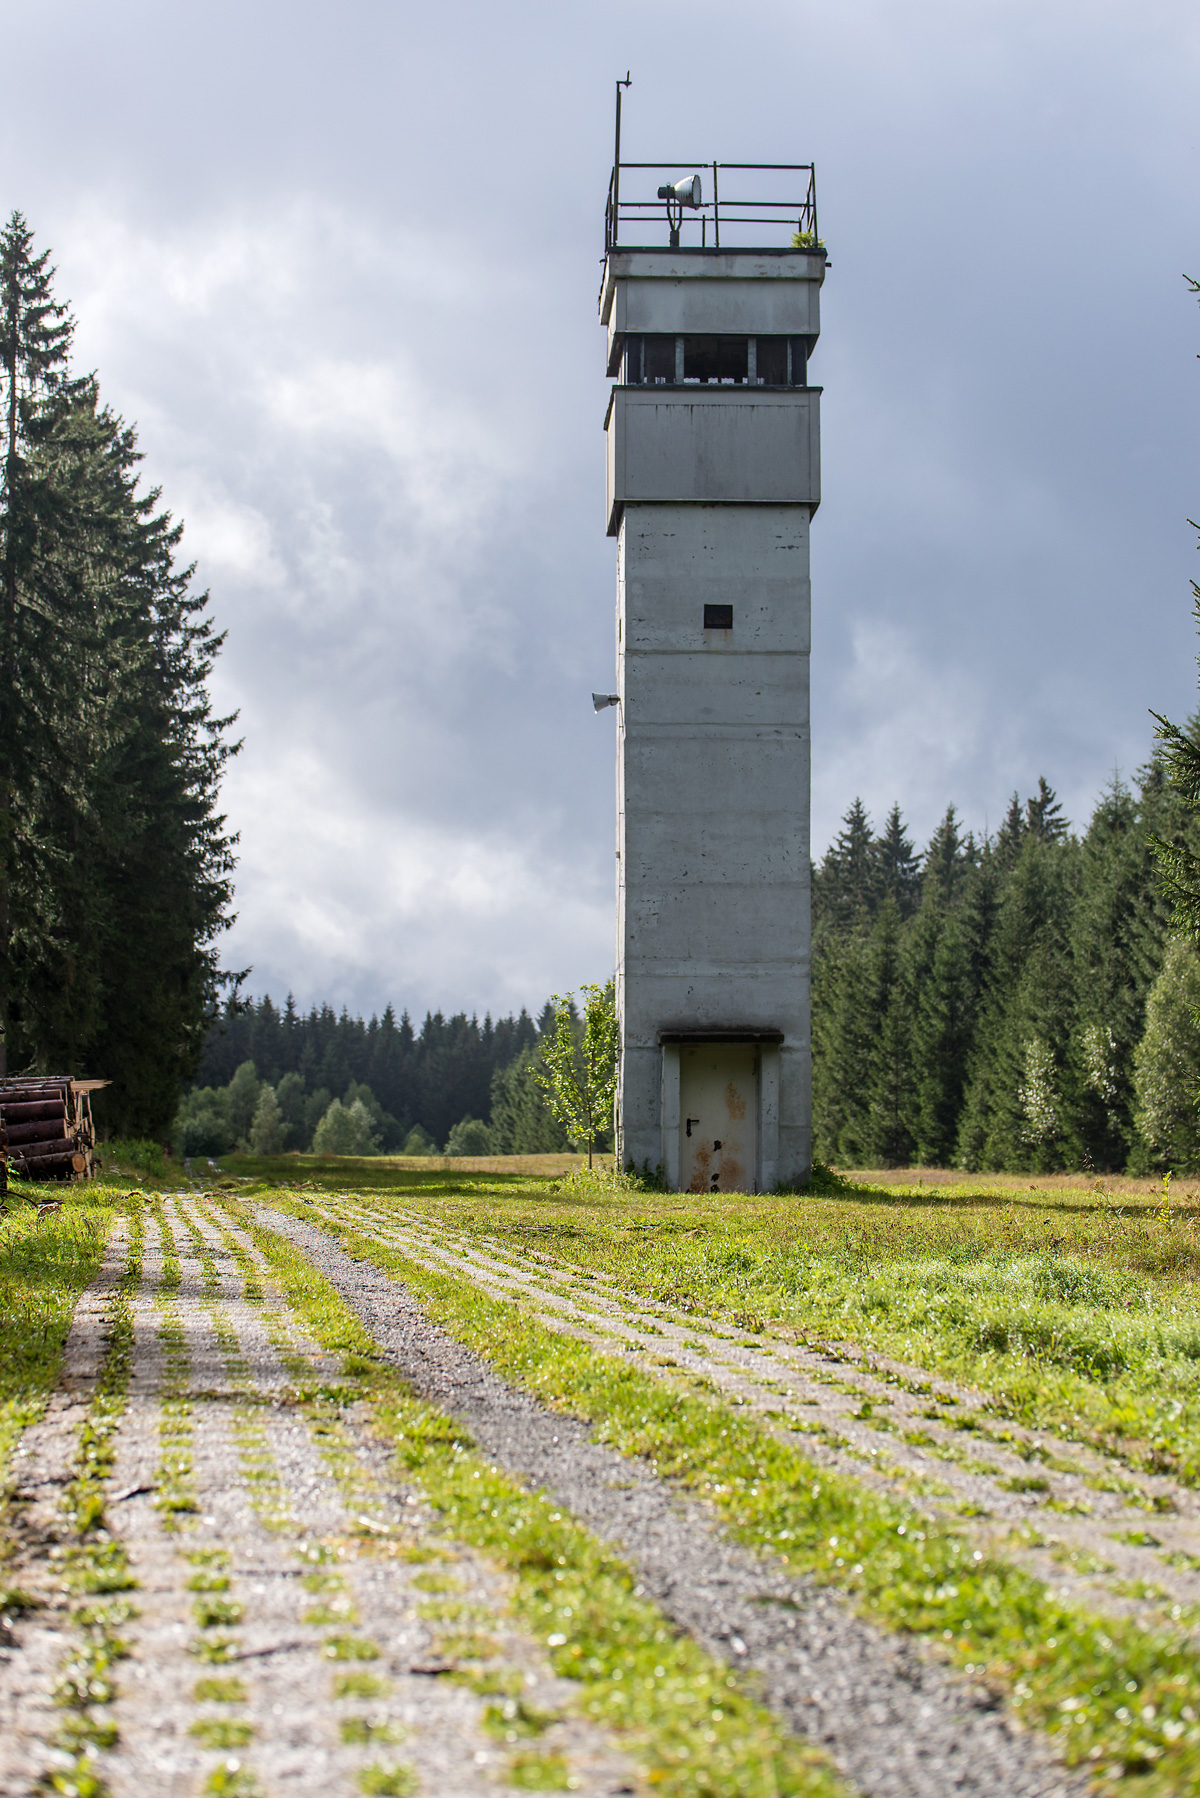 Oben im Harz kann man im Freilandgrenzmuseum Sorge einen original Grenzturm aus Zeiten der deutschen Teilung sehen.